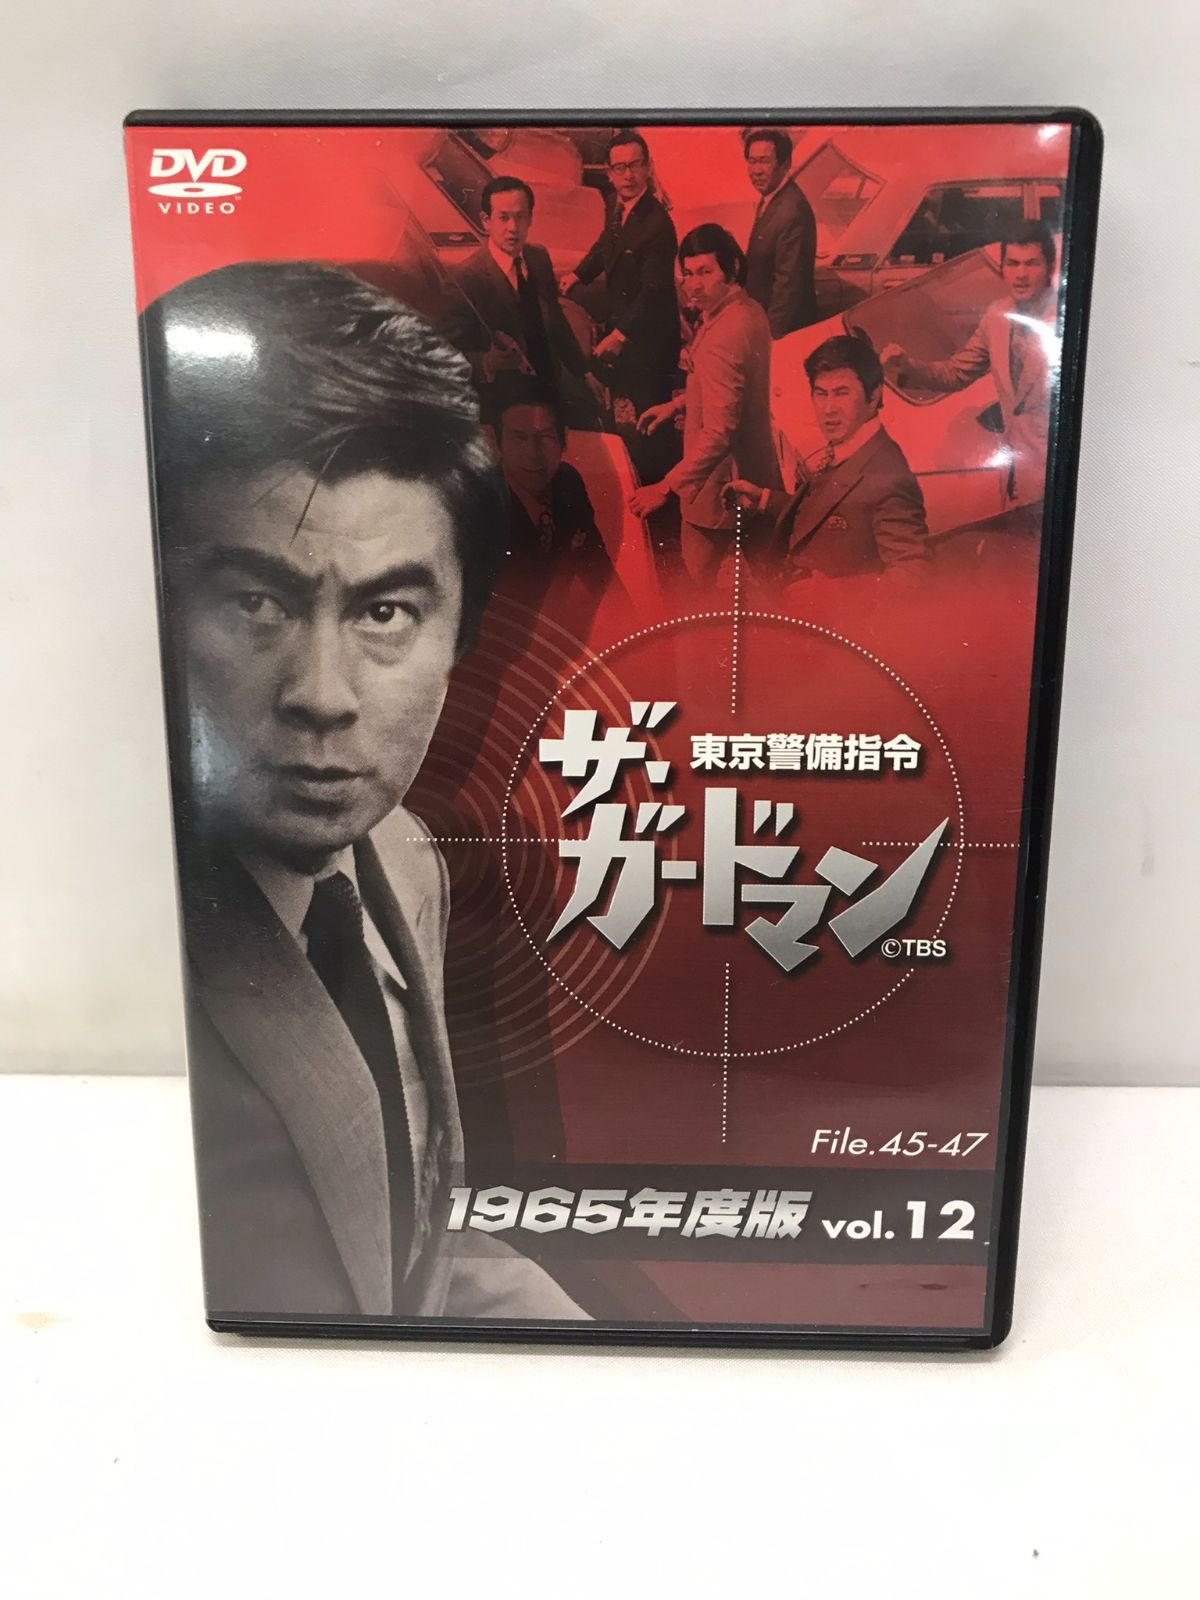 ザ・ガードマン 1965年版DVD-BOX12巻入 宇津井健 セル版・品-